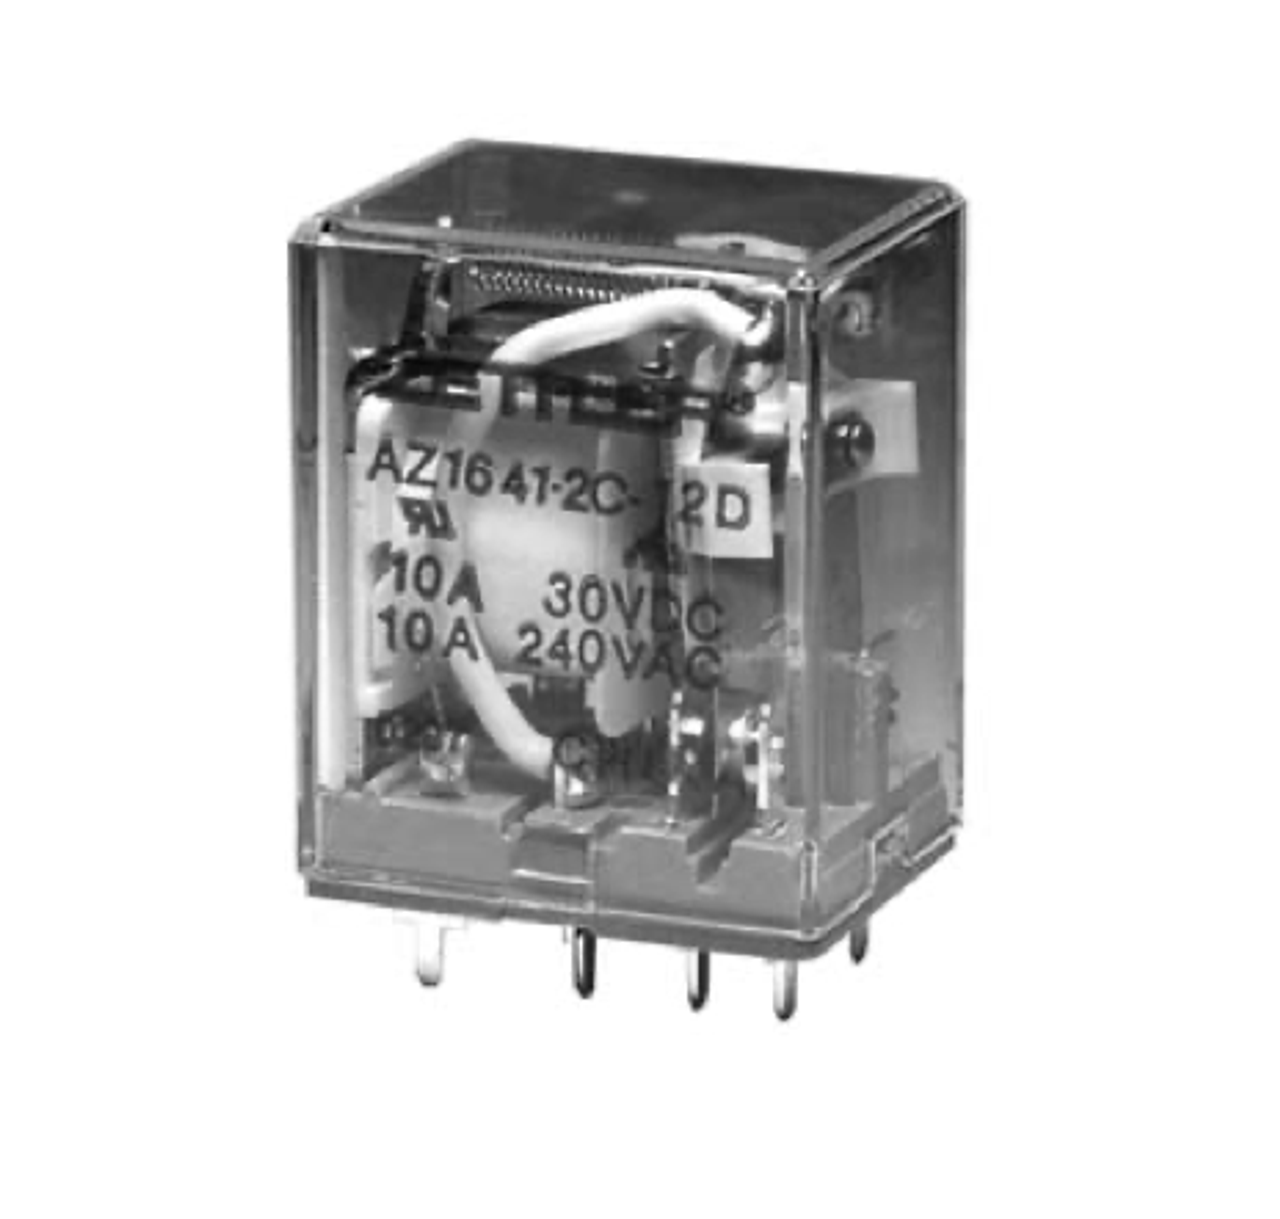 American Zettler AZ1641-3C-6A Power Relay